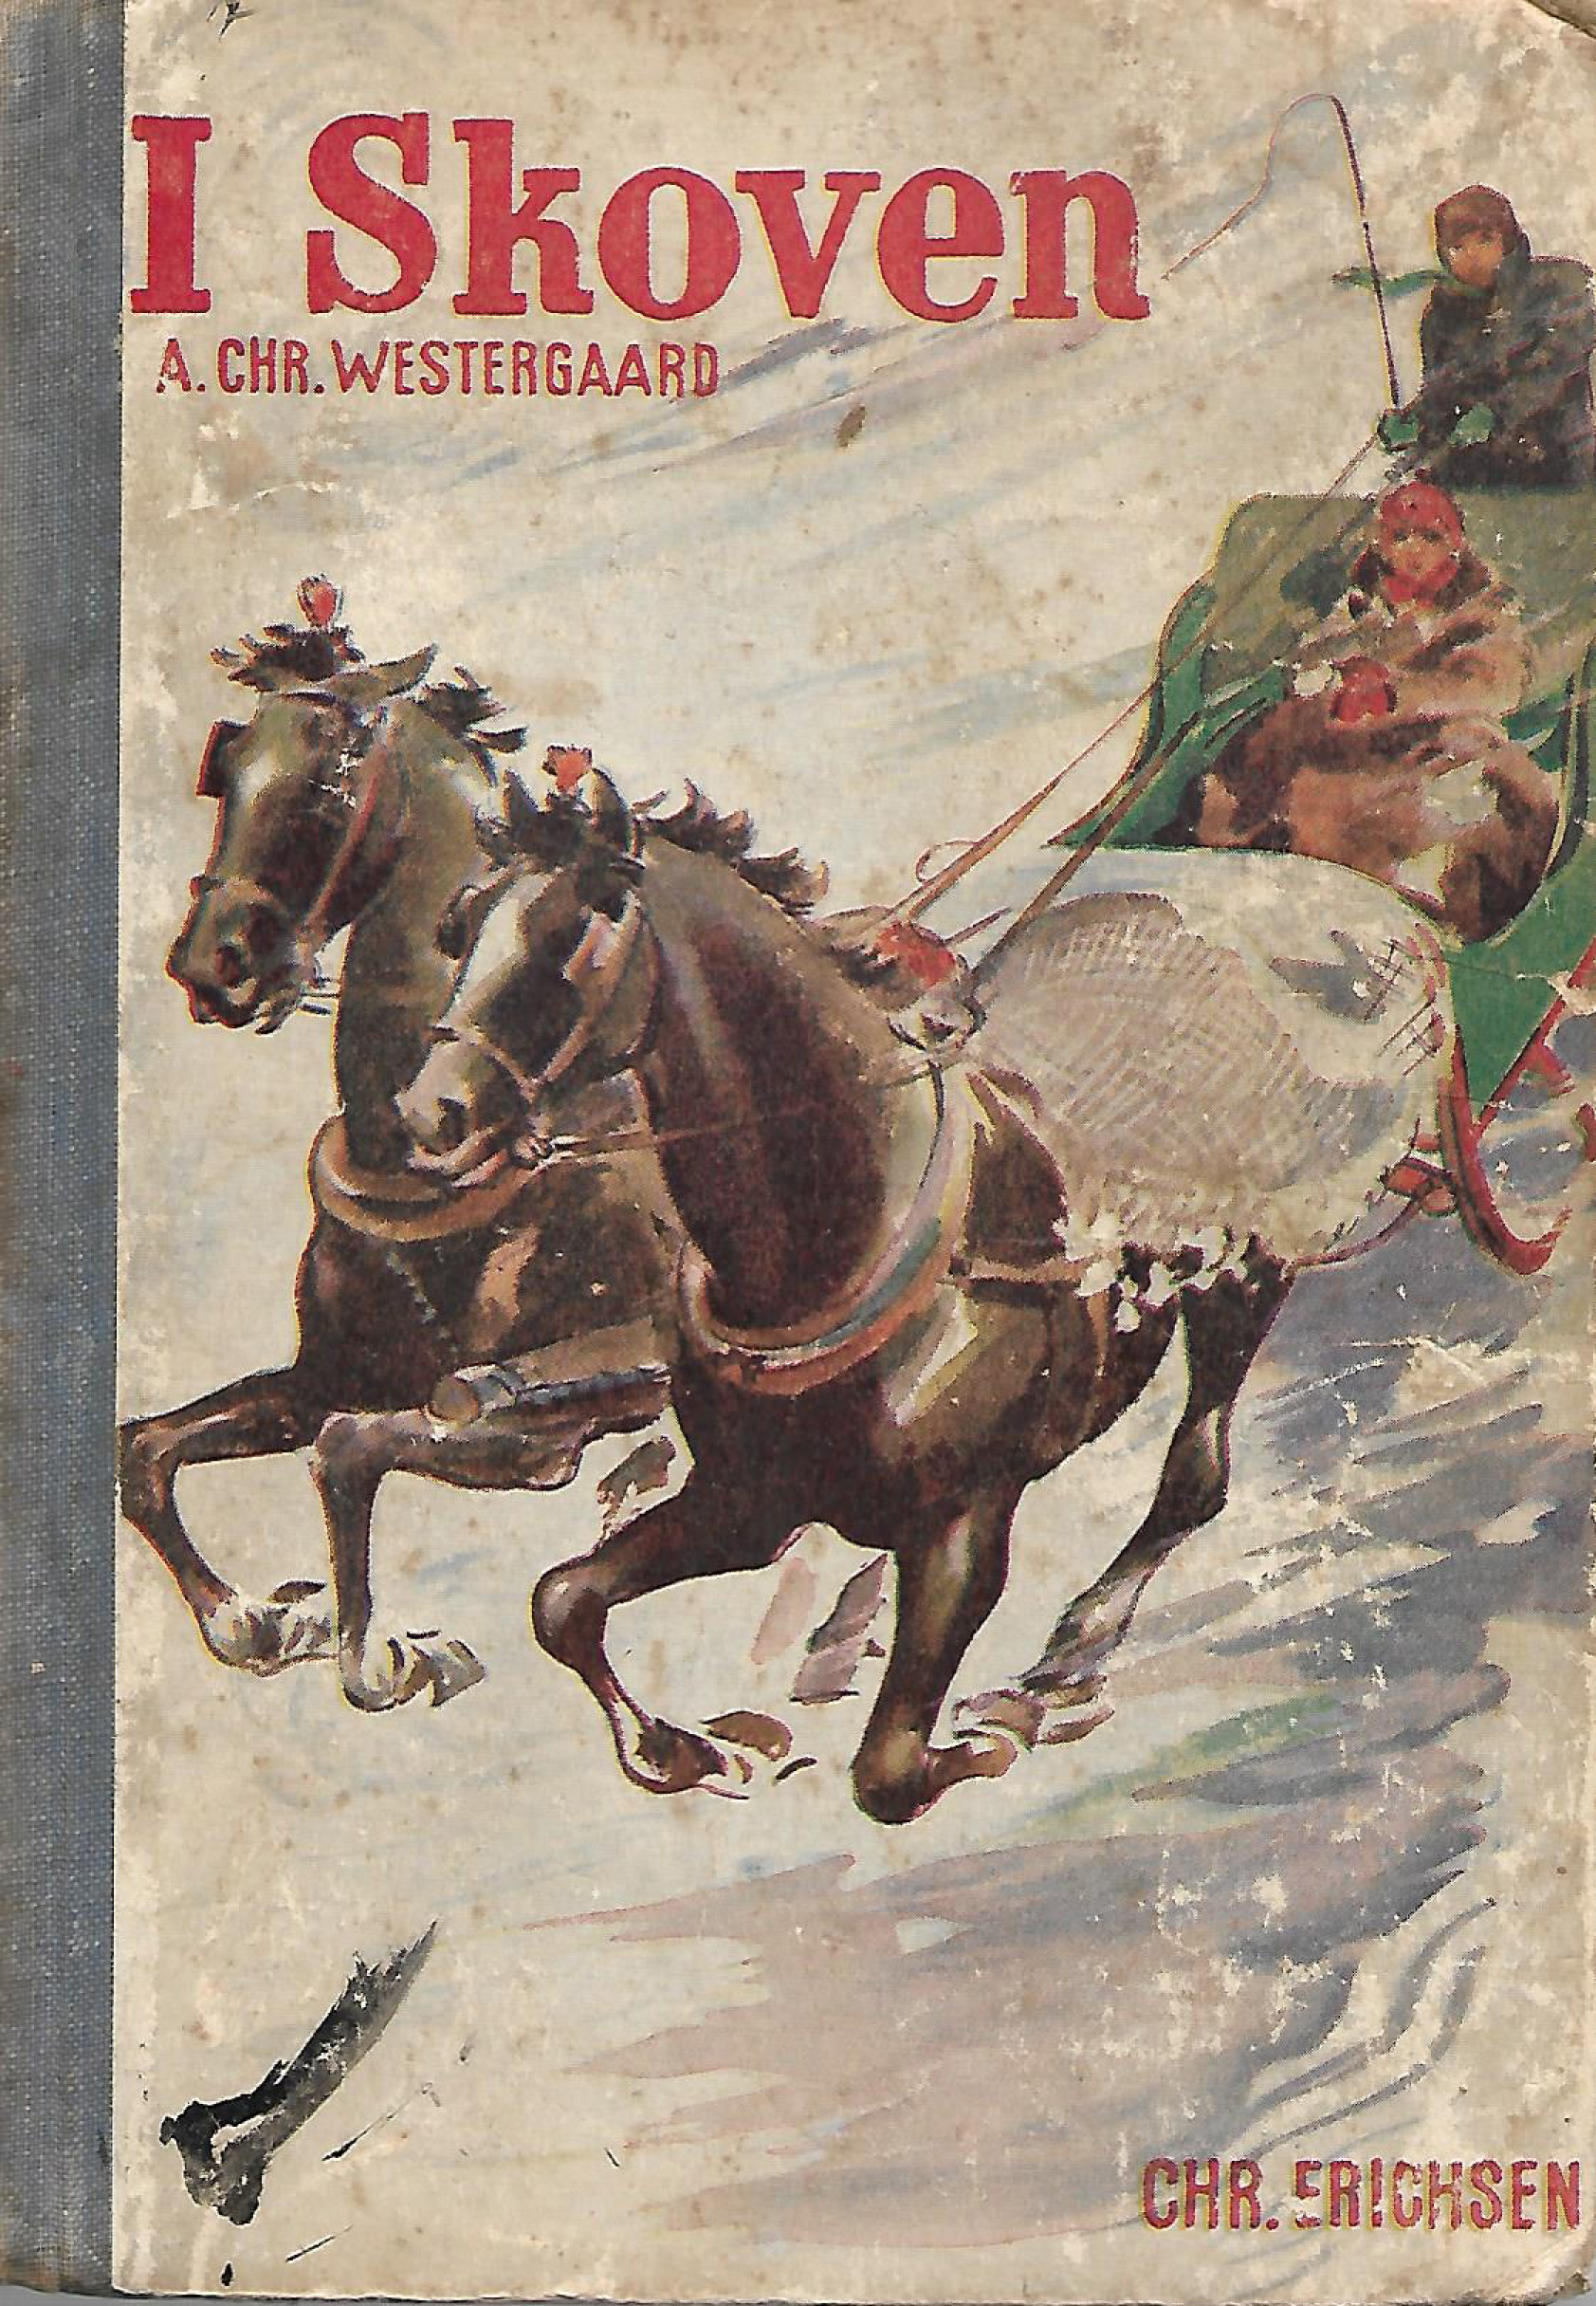 I Skoven - A Chr Westergaard - 1937